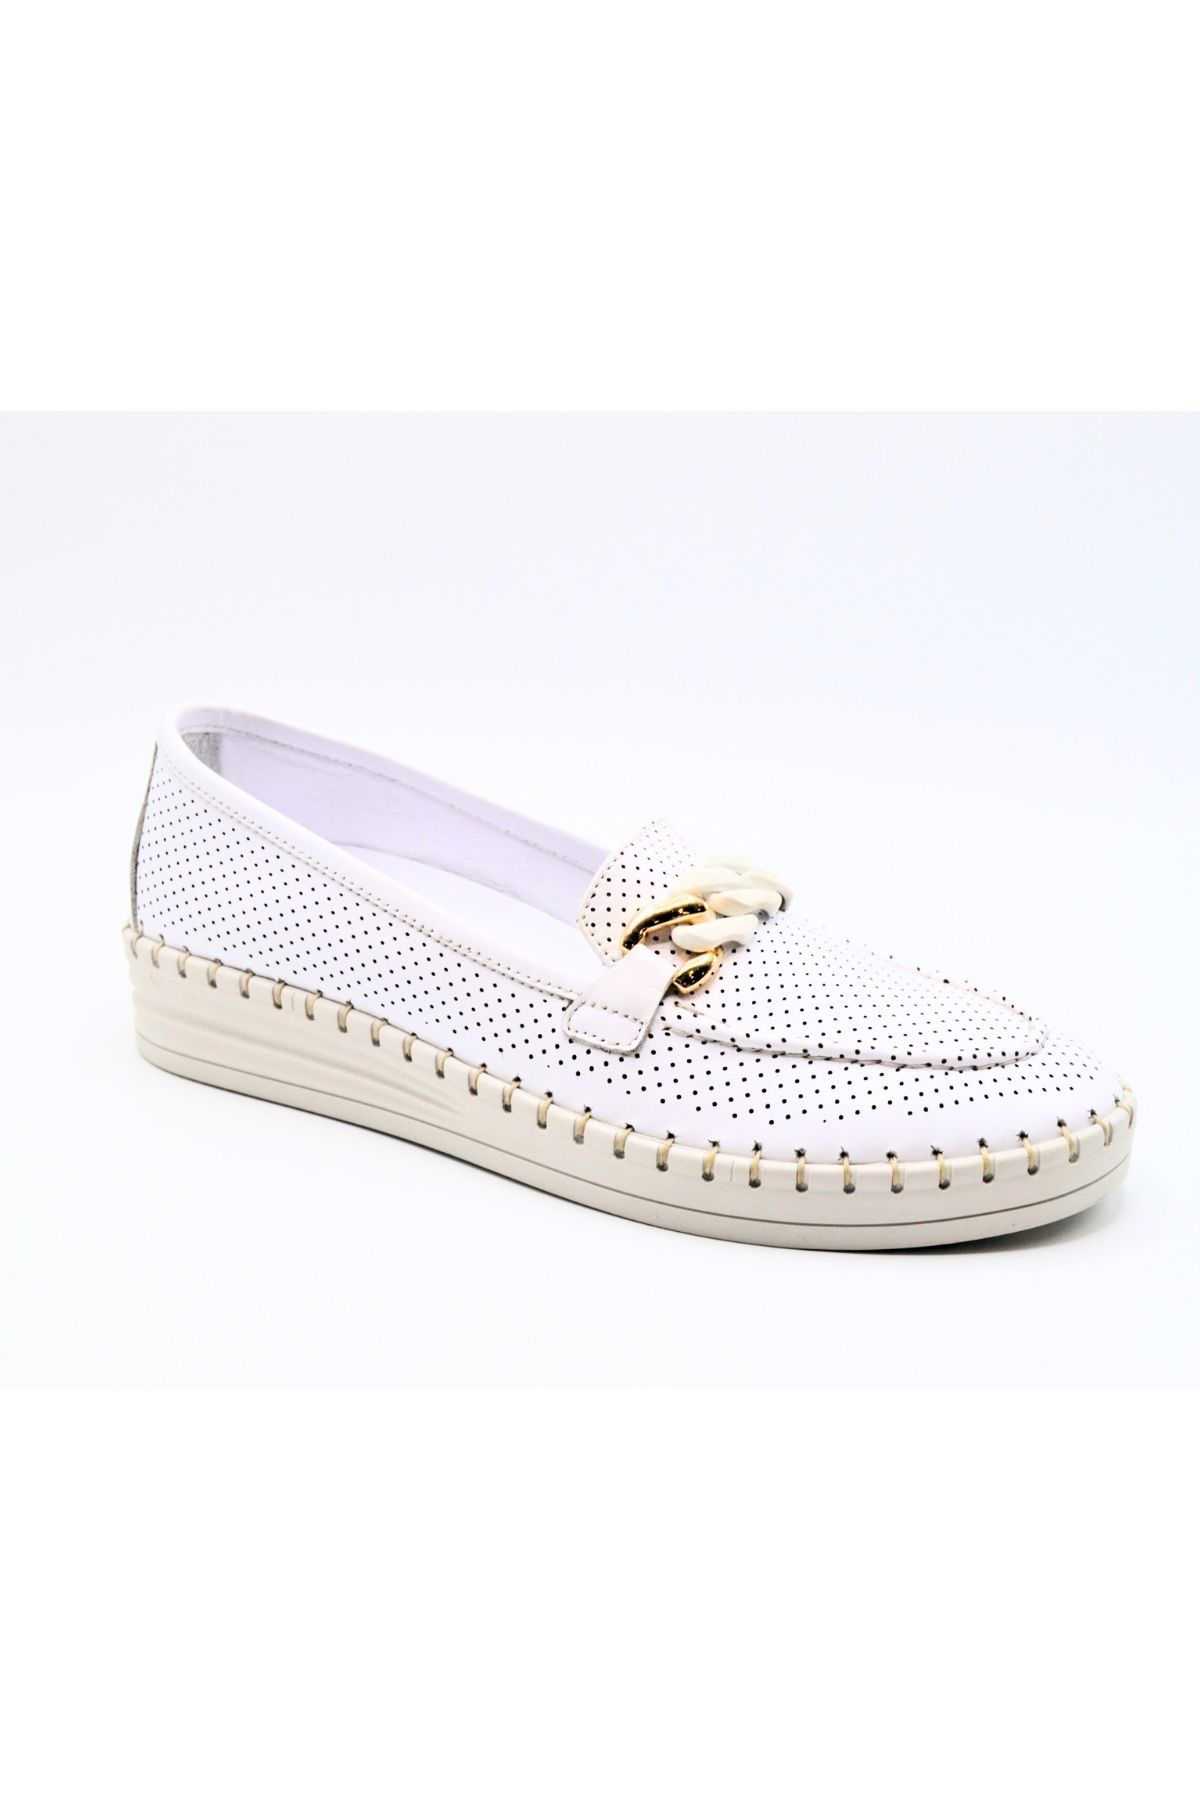 Kadın Comfort Deri Ayakkabı Beyaz 2211250Y - Thumbnail